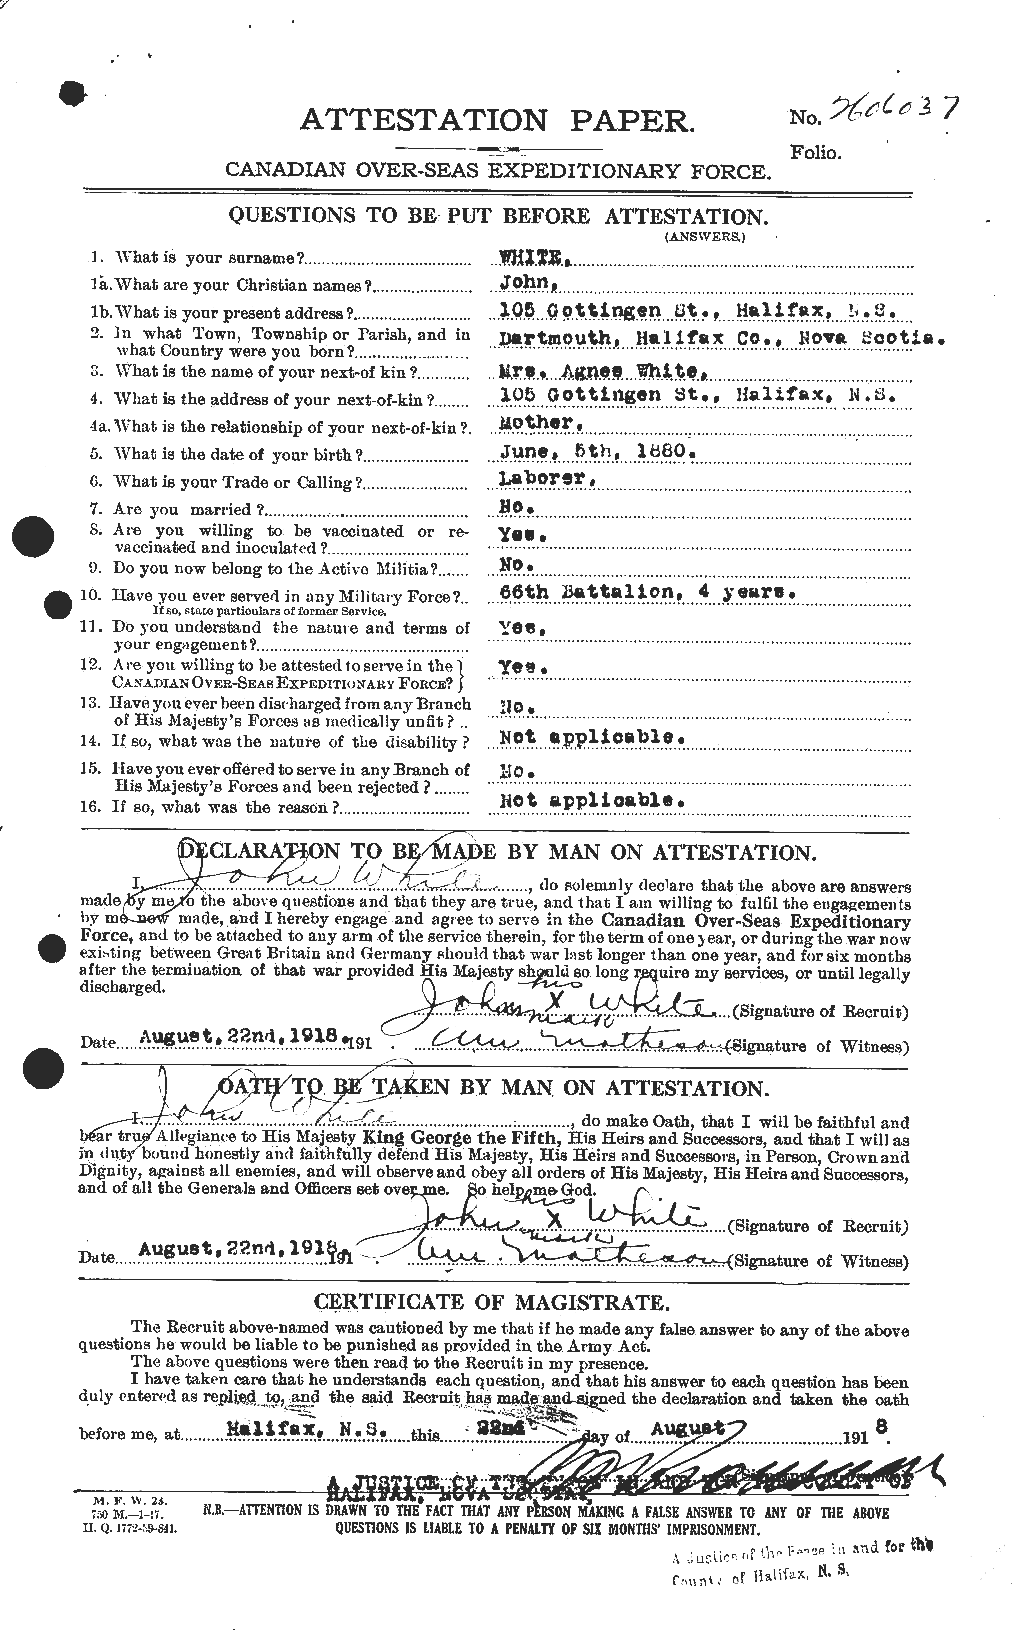 Dossiers du Personnel de la Première Guerre mondiale - CEC 671510a